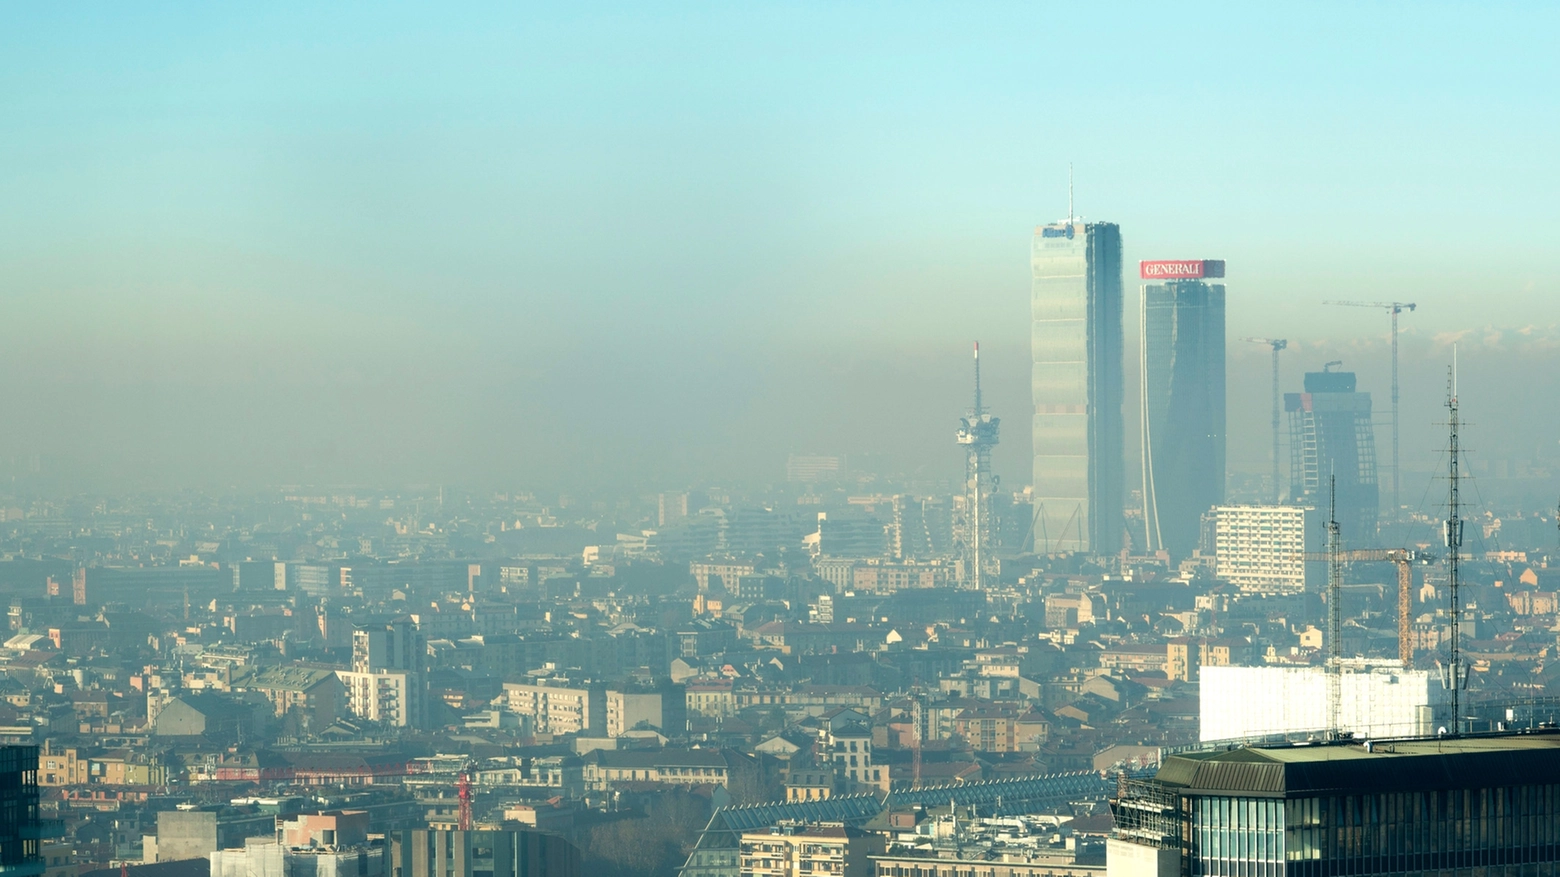 Le nostre città sono tra le più inquinate d'Europa